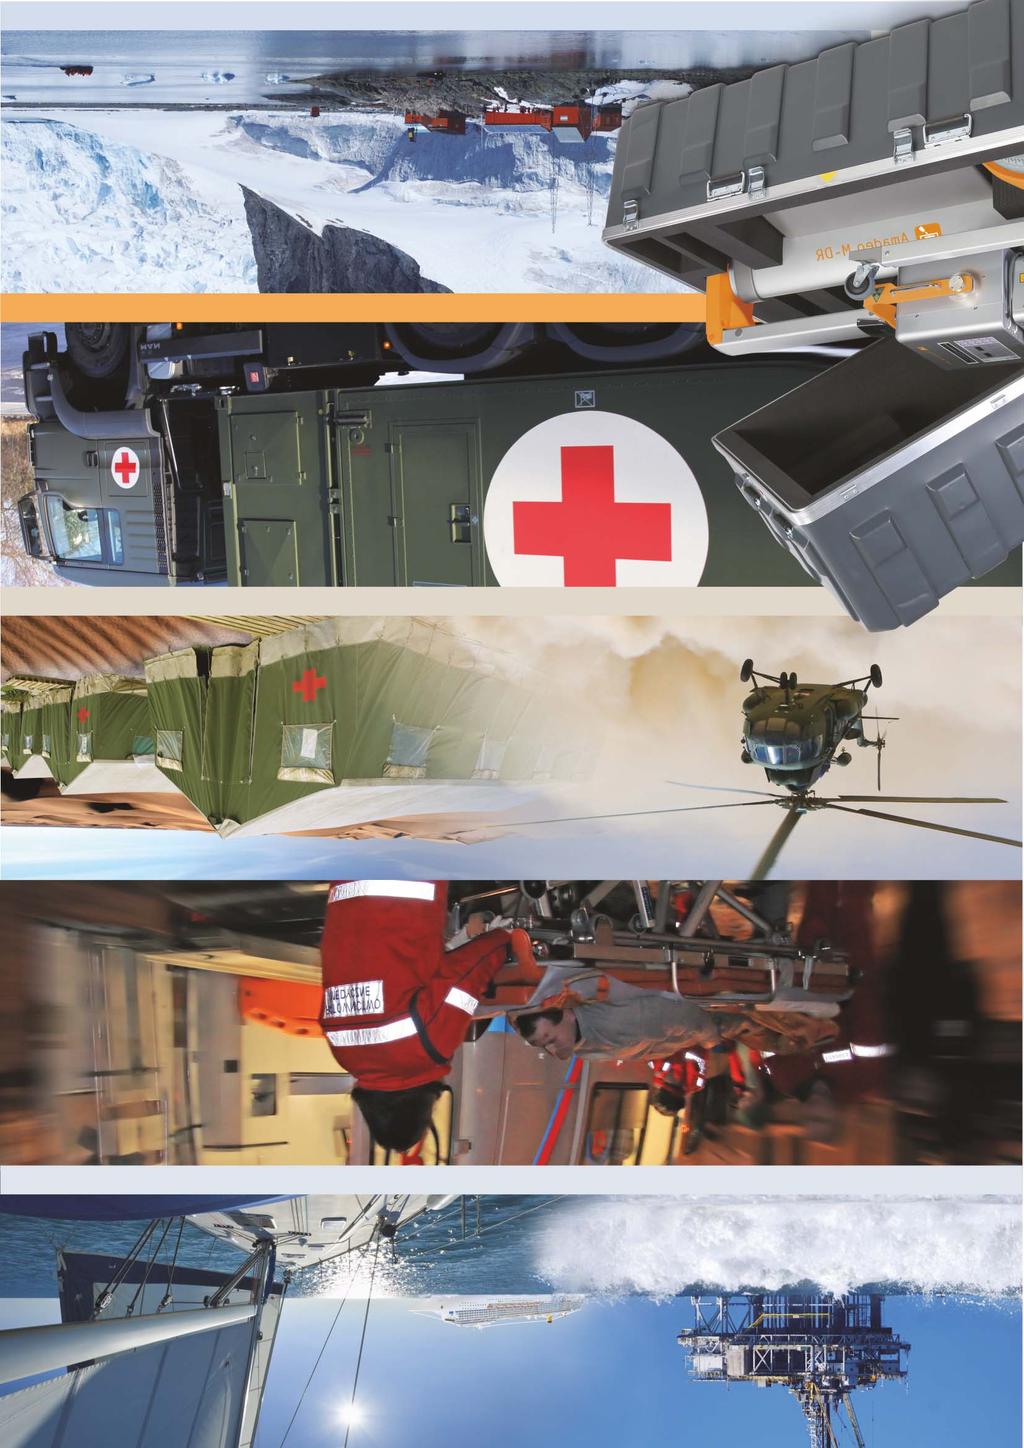 Für den Einsatz auf Schiffen, Yachten und Ölplattformen,... in Ambulanzfahrzeugen und im Hospitalbereich als mobiles Bettenaufnahmesystem oder in der Notfallaufnahme,.